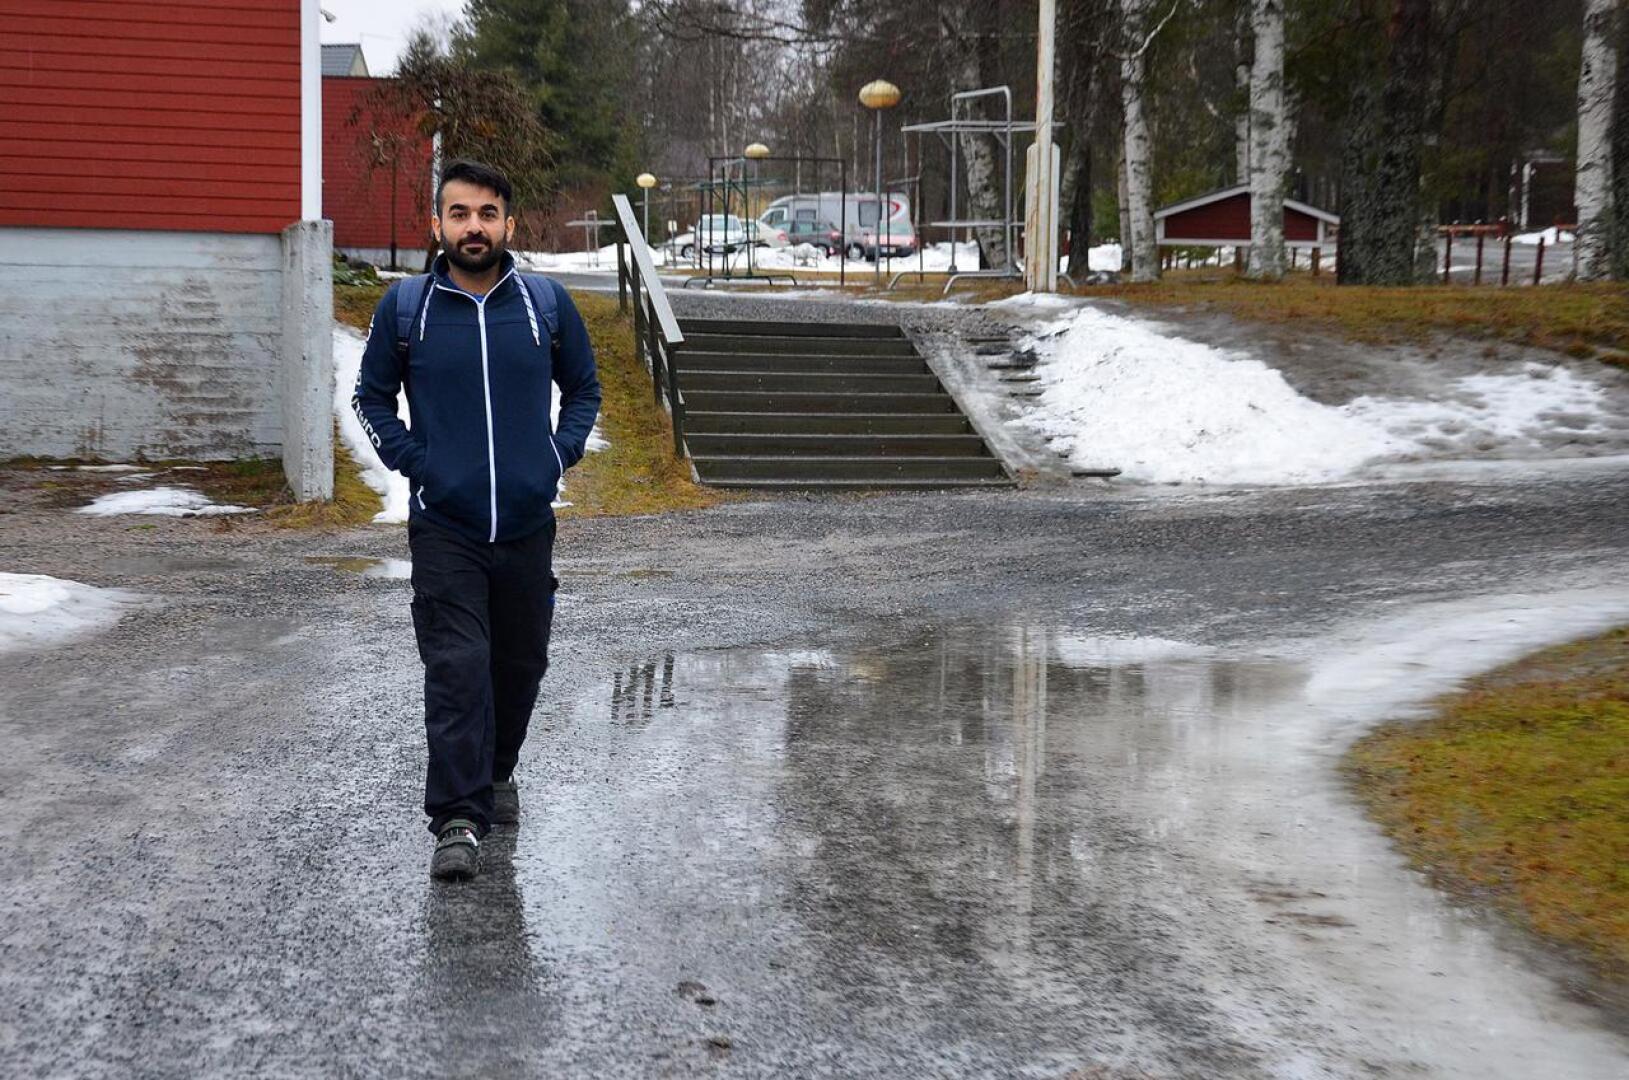 Puolenkymmenen vuoden aikana Sami Hussein on nähnyt monenlaista keliä Suomessa. Rovaniemellä asuessaan hän paleli jakaessaan lehtiä pitkästi yli 30 asteen pakkasessa ja keskiviikkona hän lähti vesisateessa töihin Sievissä.